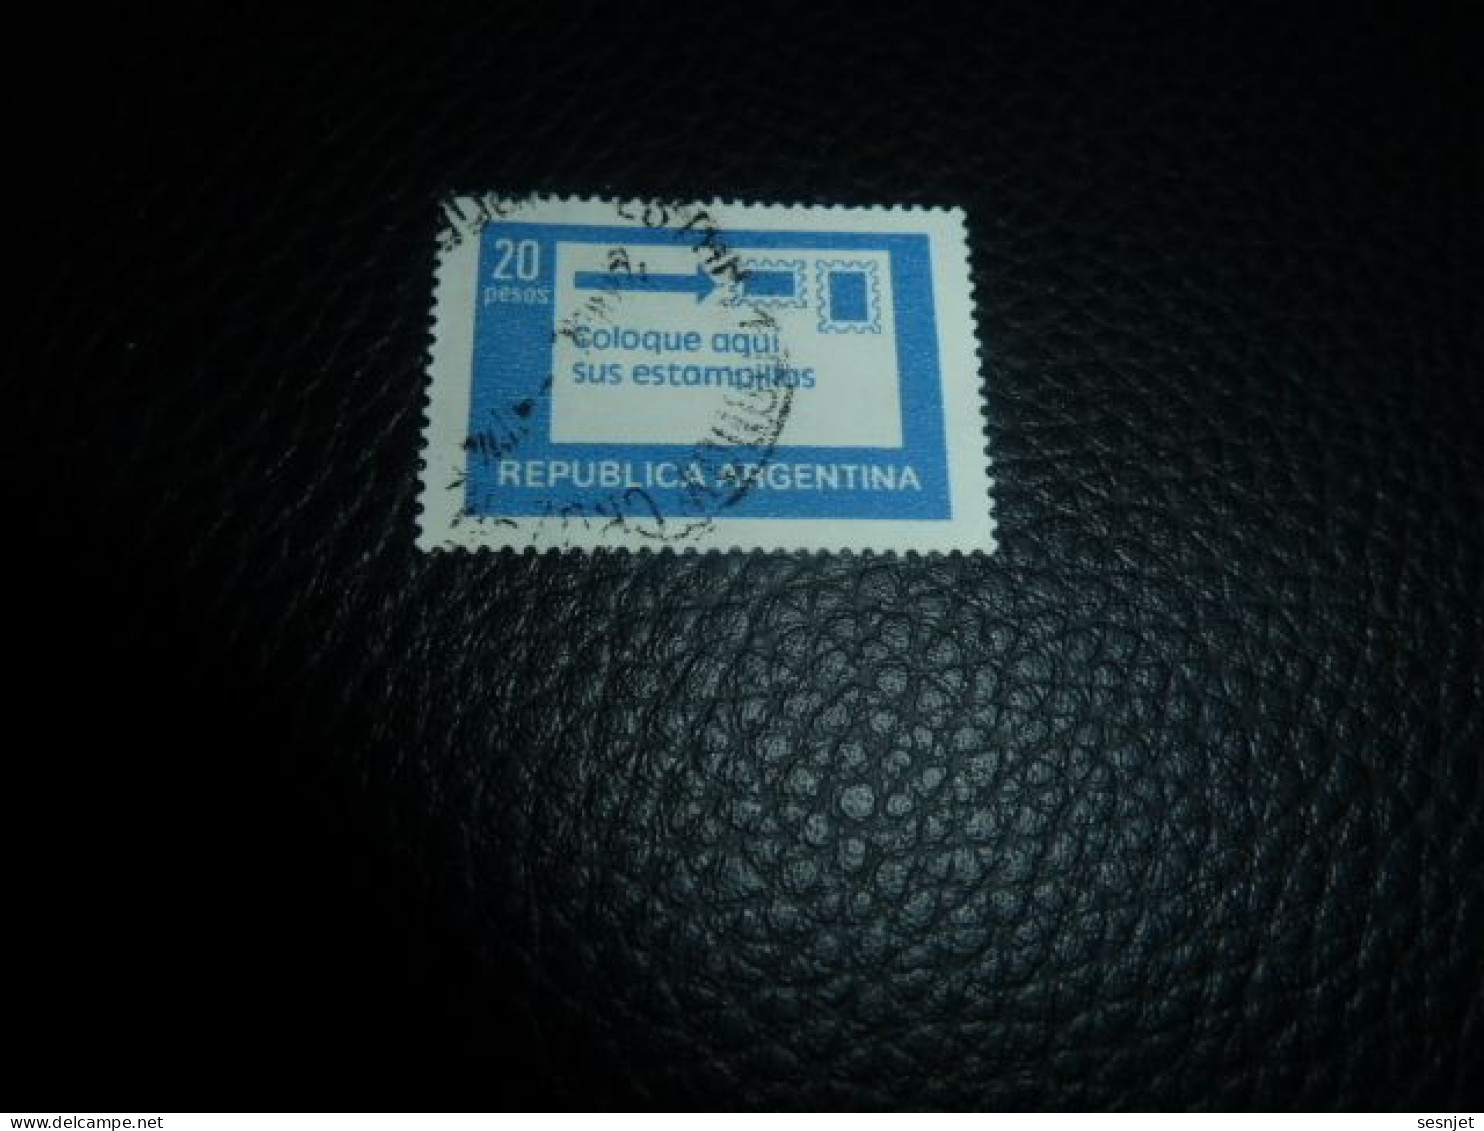 Republica Argentina - Coloque Aqui Sus Estampillas - 20 Pesos - Yt 1144 - Bleu - Oblitéré - Année 1978 - - Usados